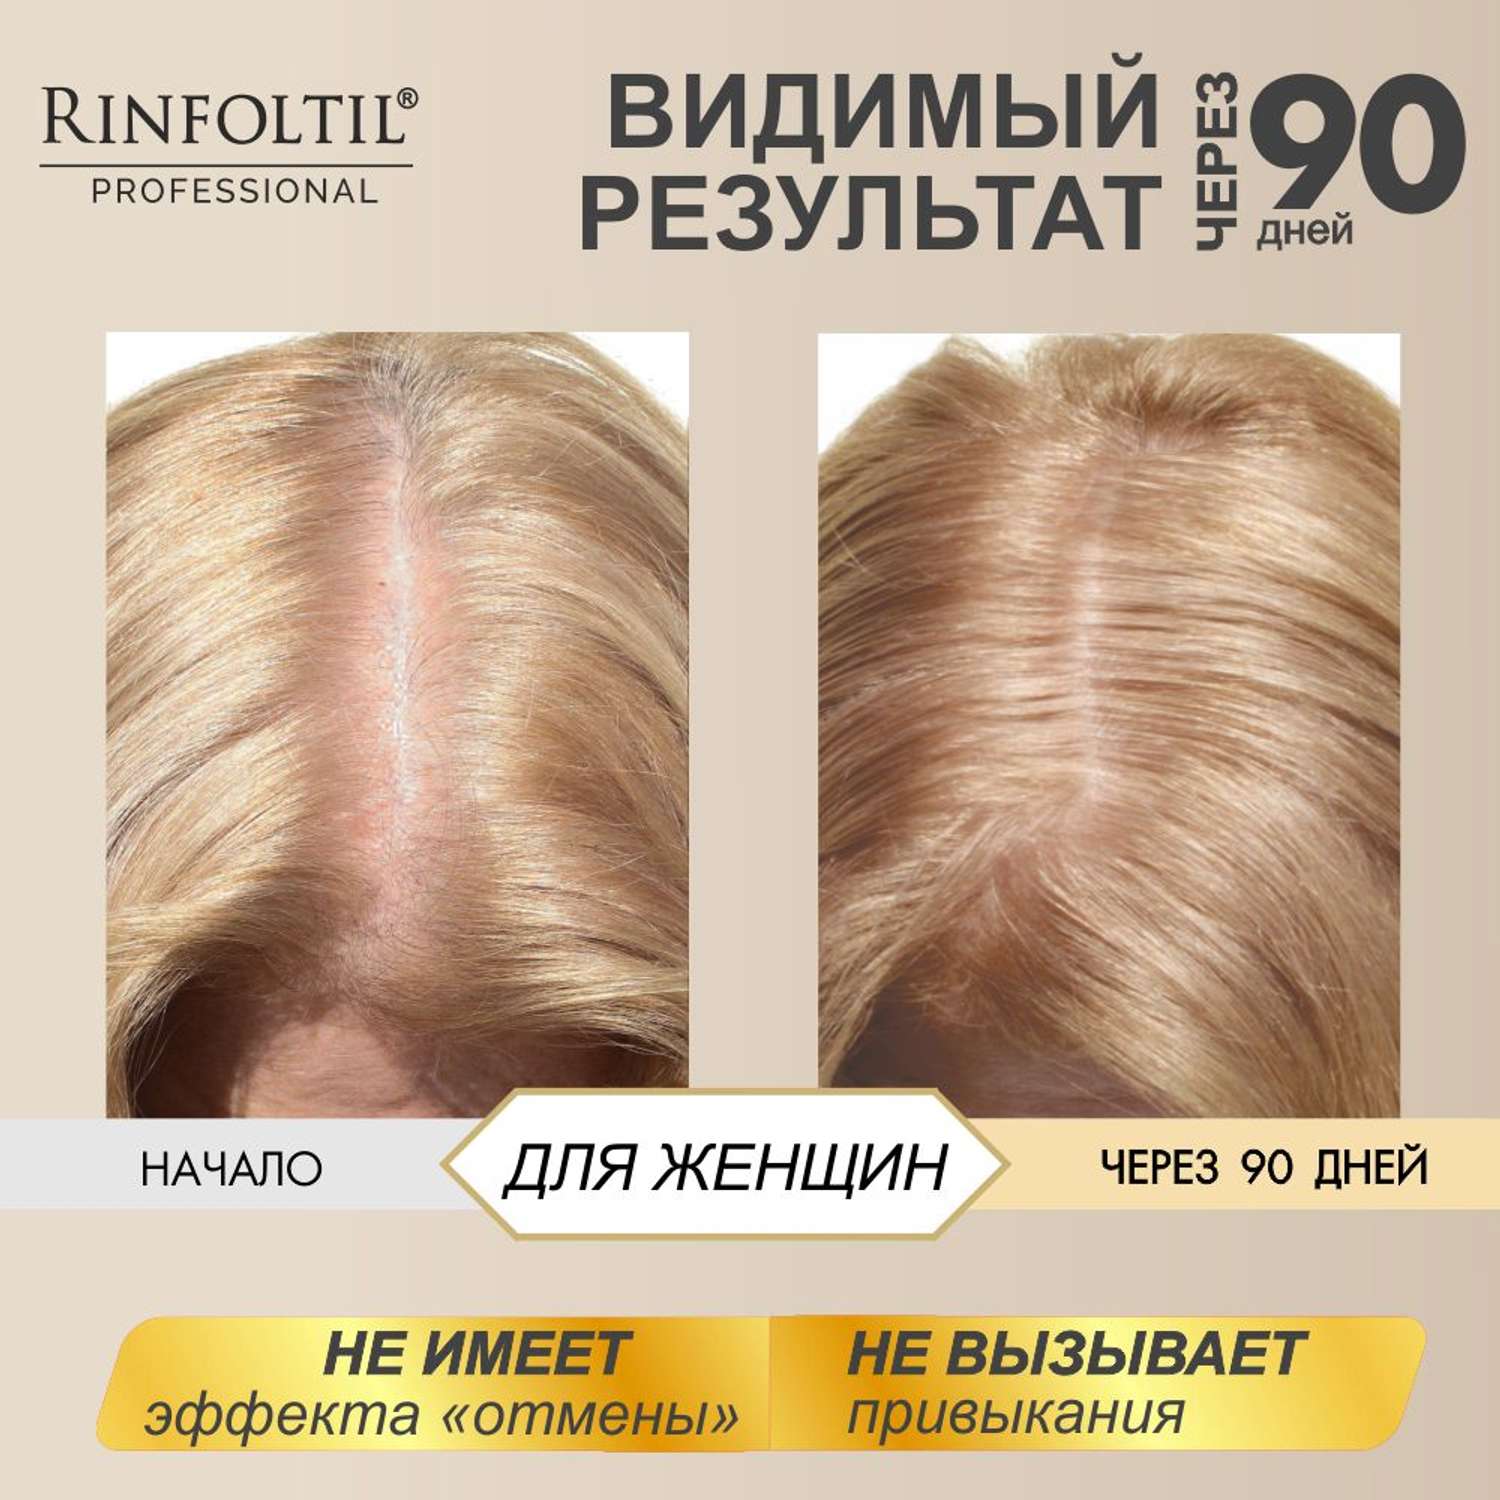 Лосьон Rinfoltil СЕРЕНОА лосьон для женщин для улучшения качества волос и ухода за кожей головы - фото 7